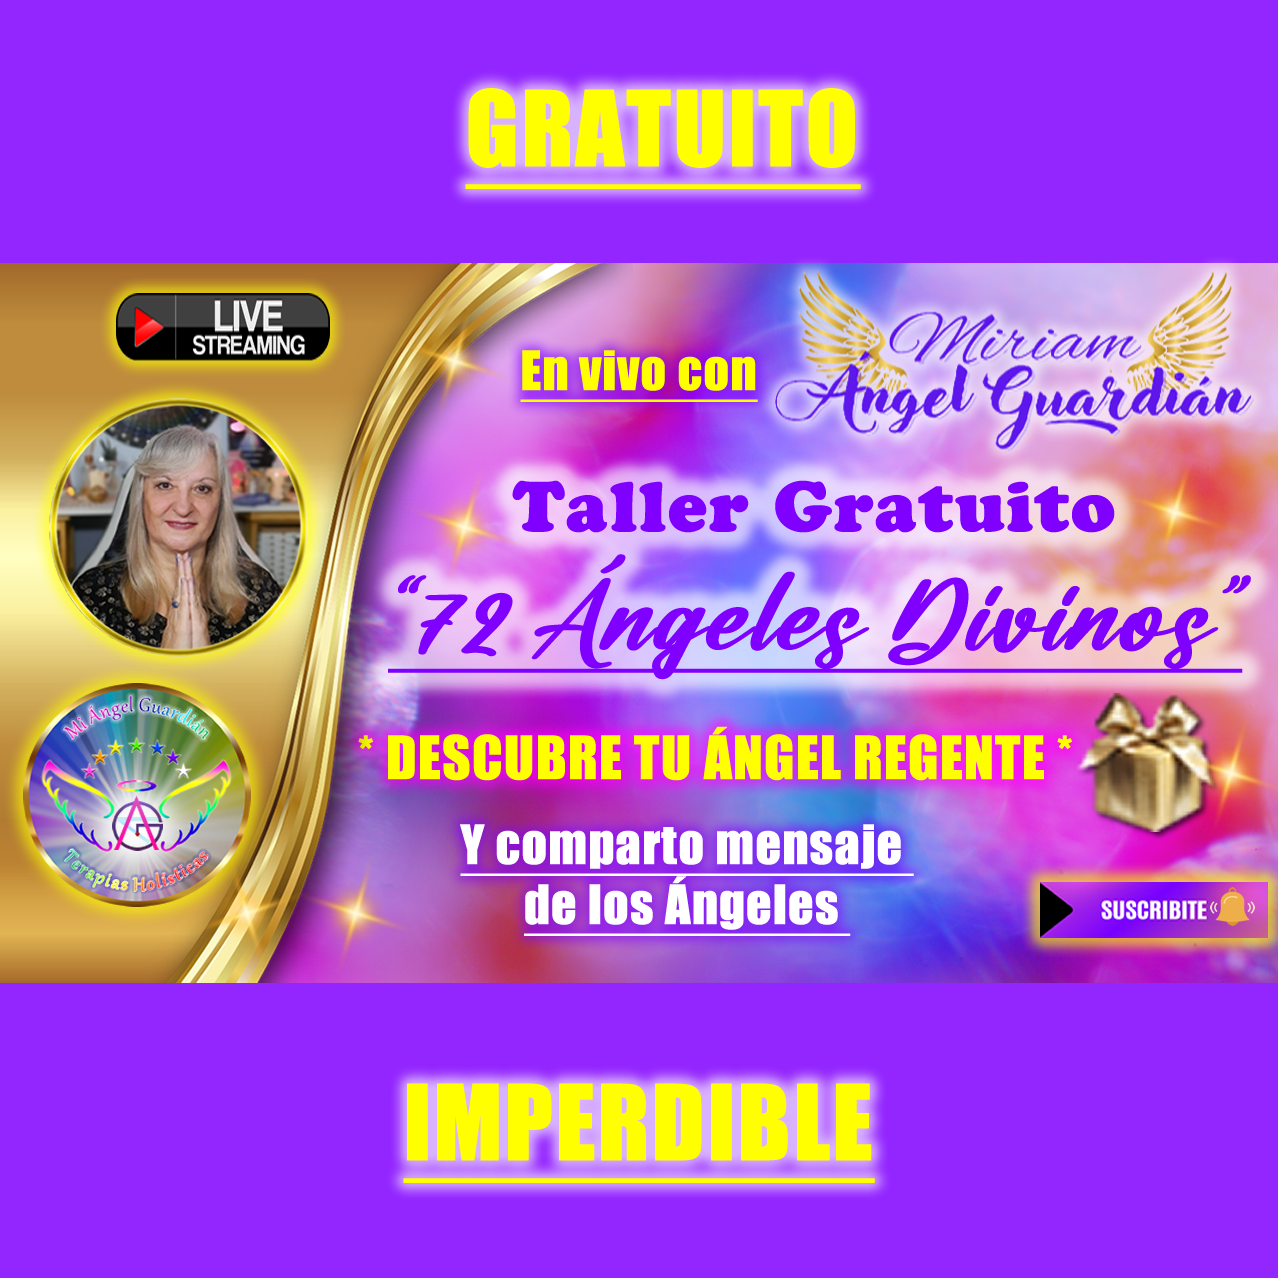 Taller Gratuito ” 72 Ángeles Divinos”